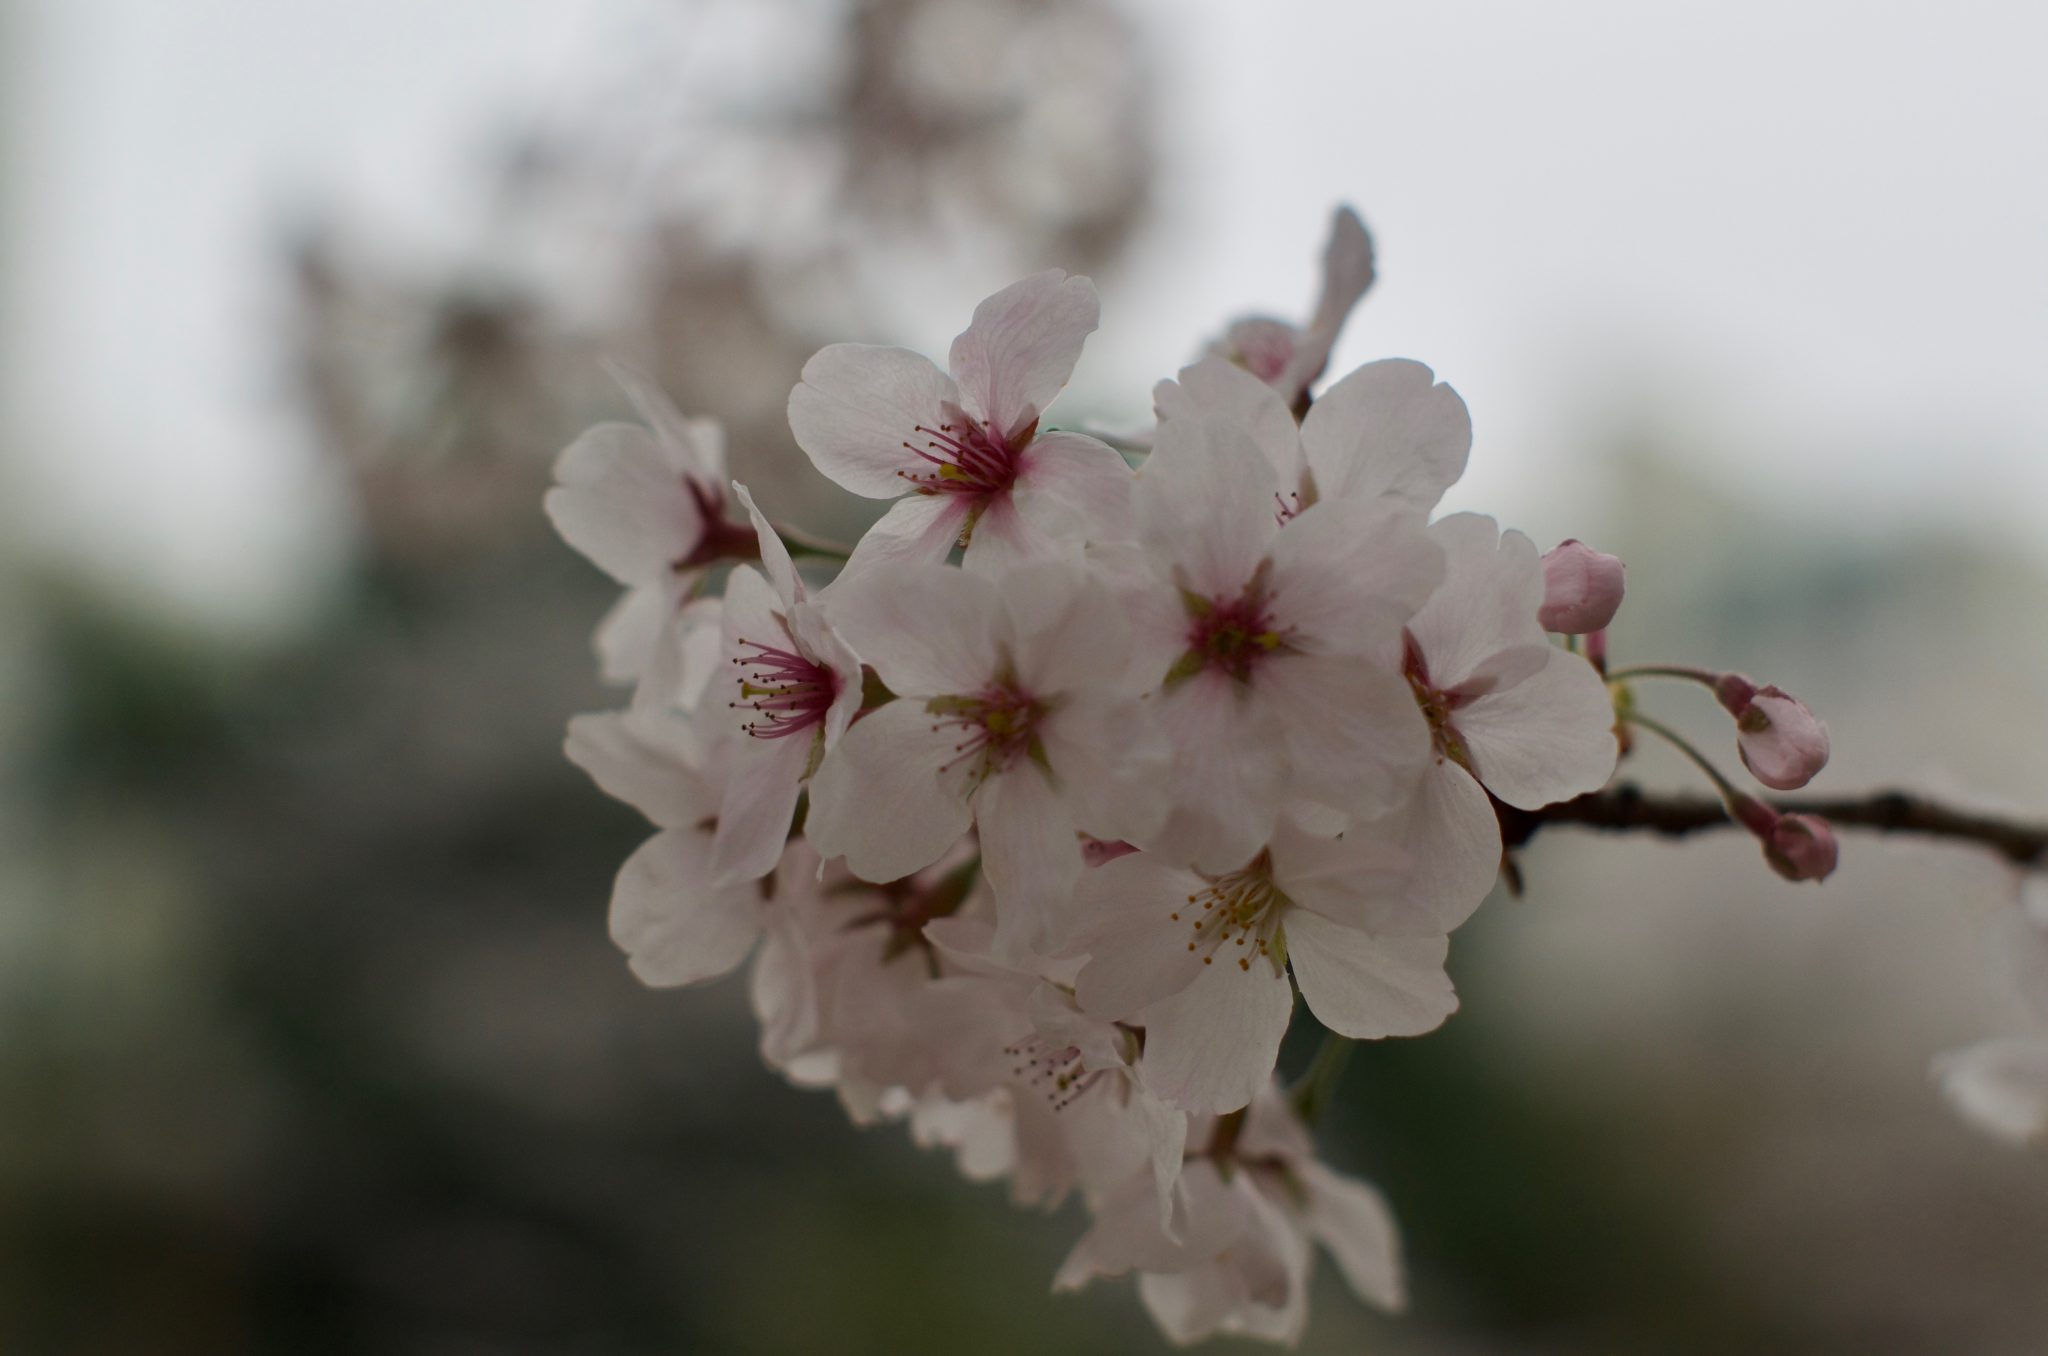 분당 중앙공원 벚꽃